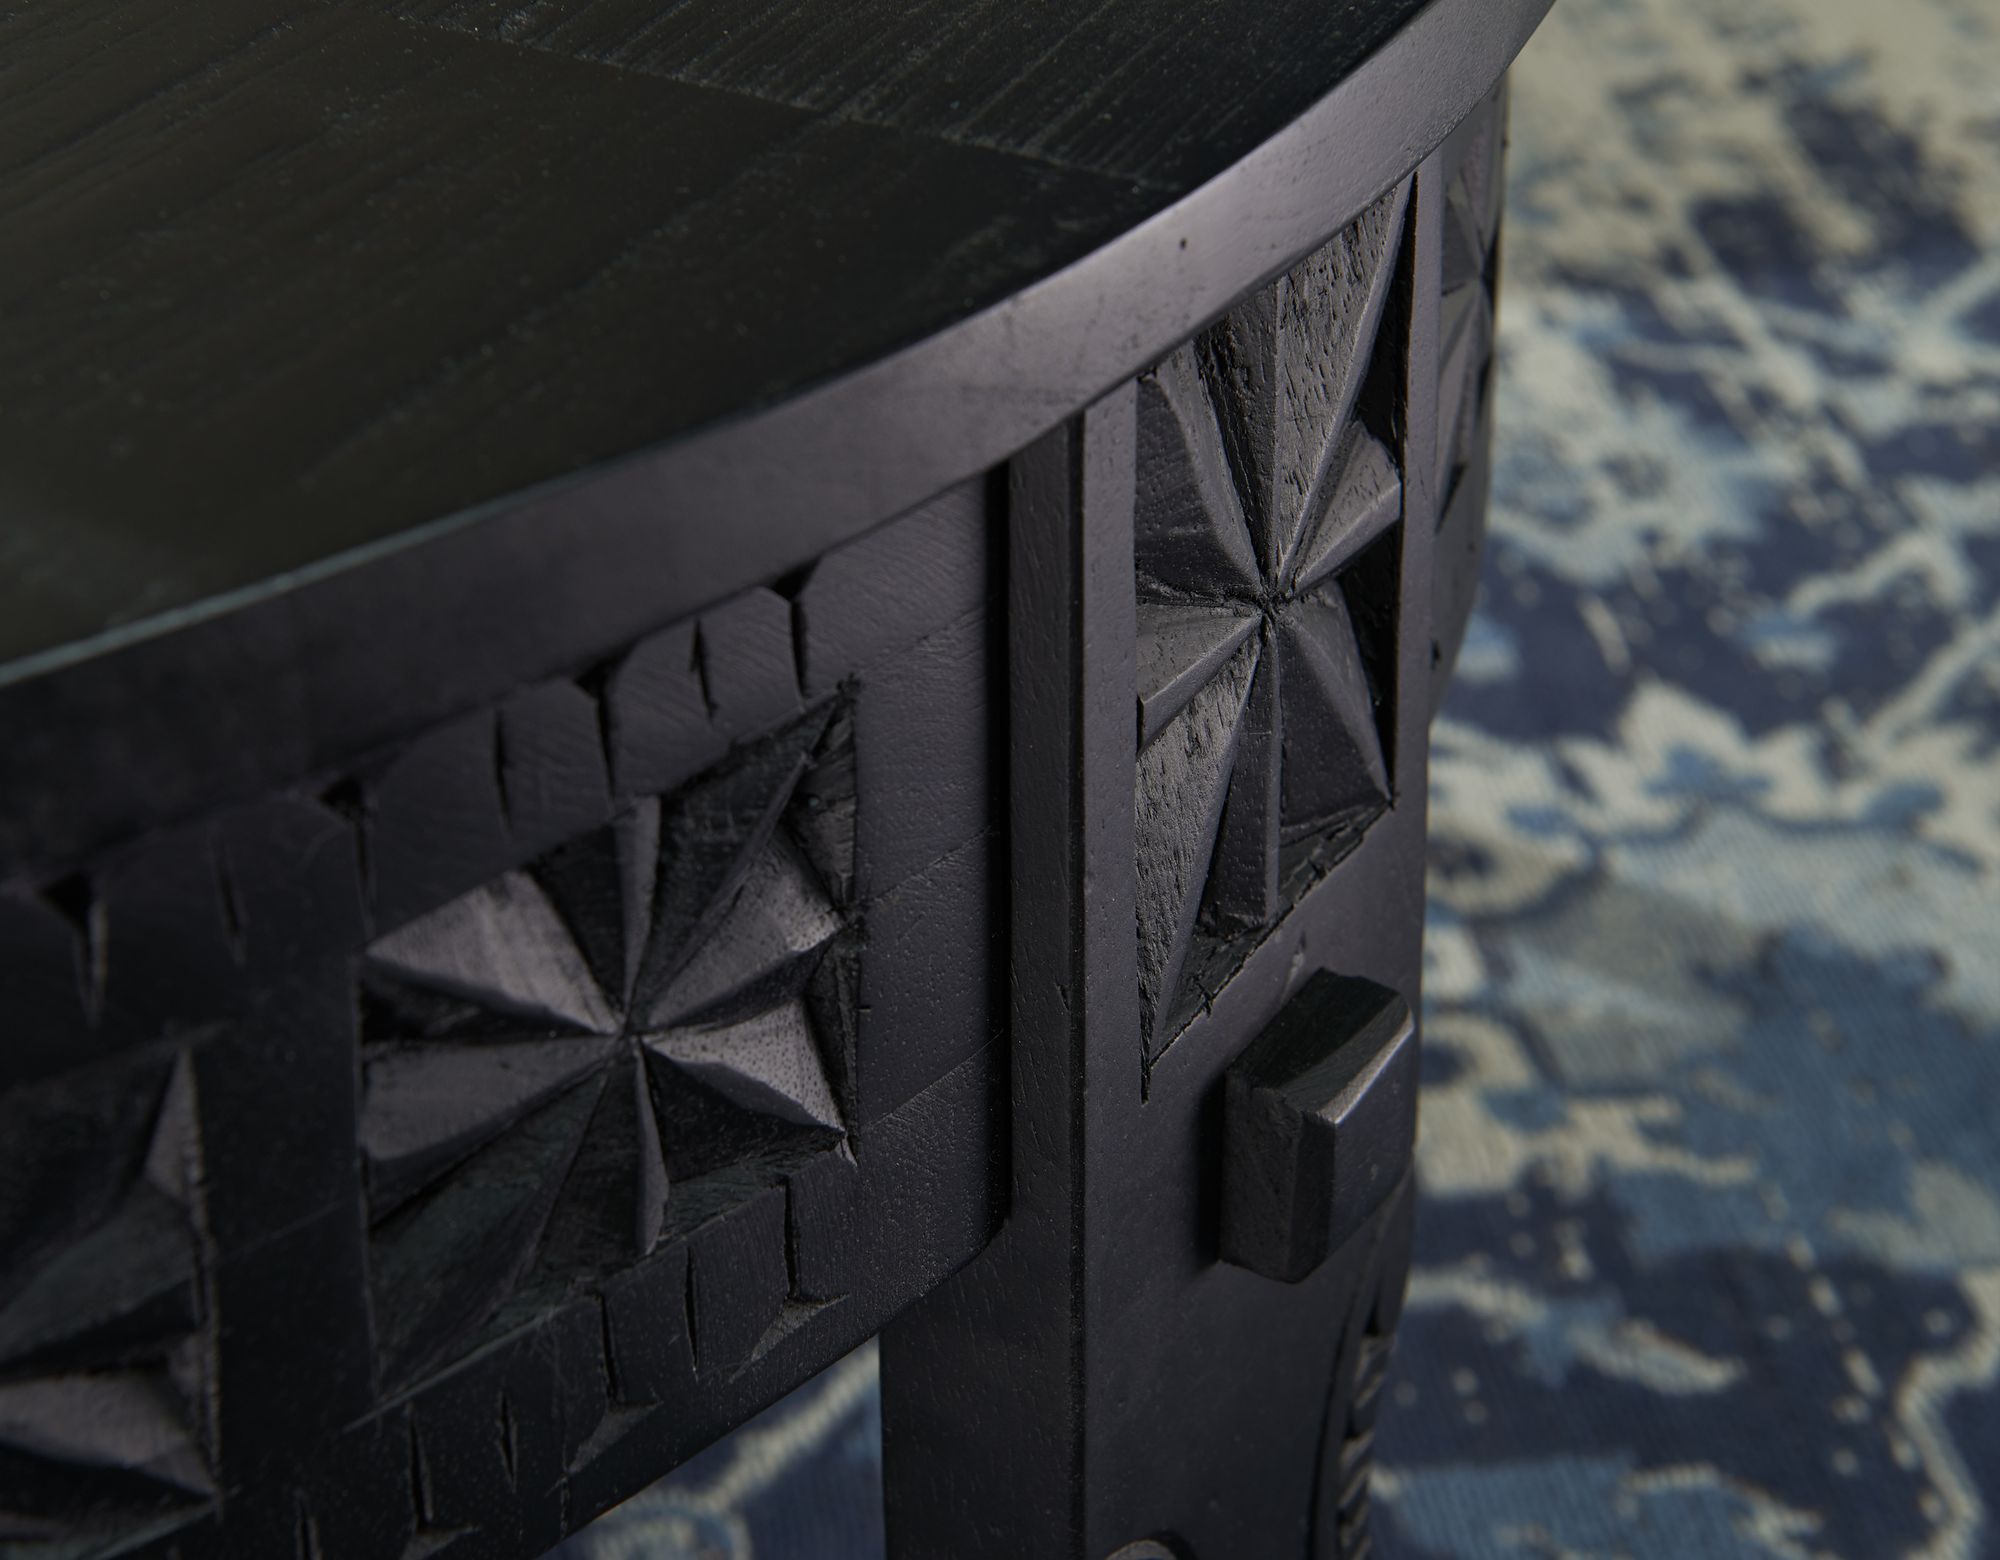 orientaalse salontafel zwart 80 cm